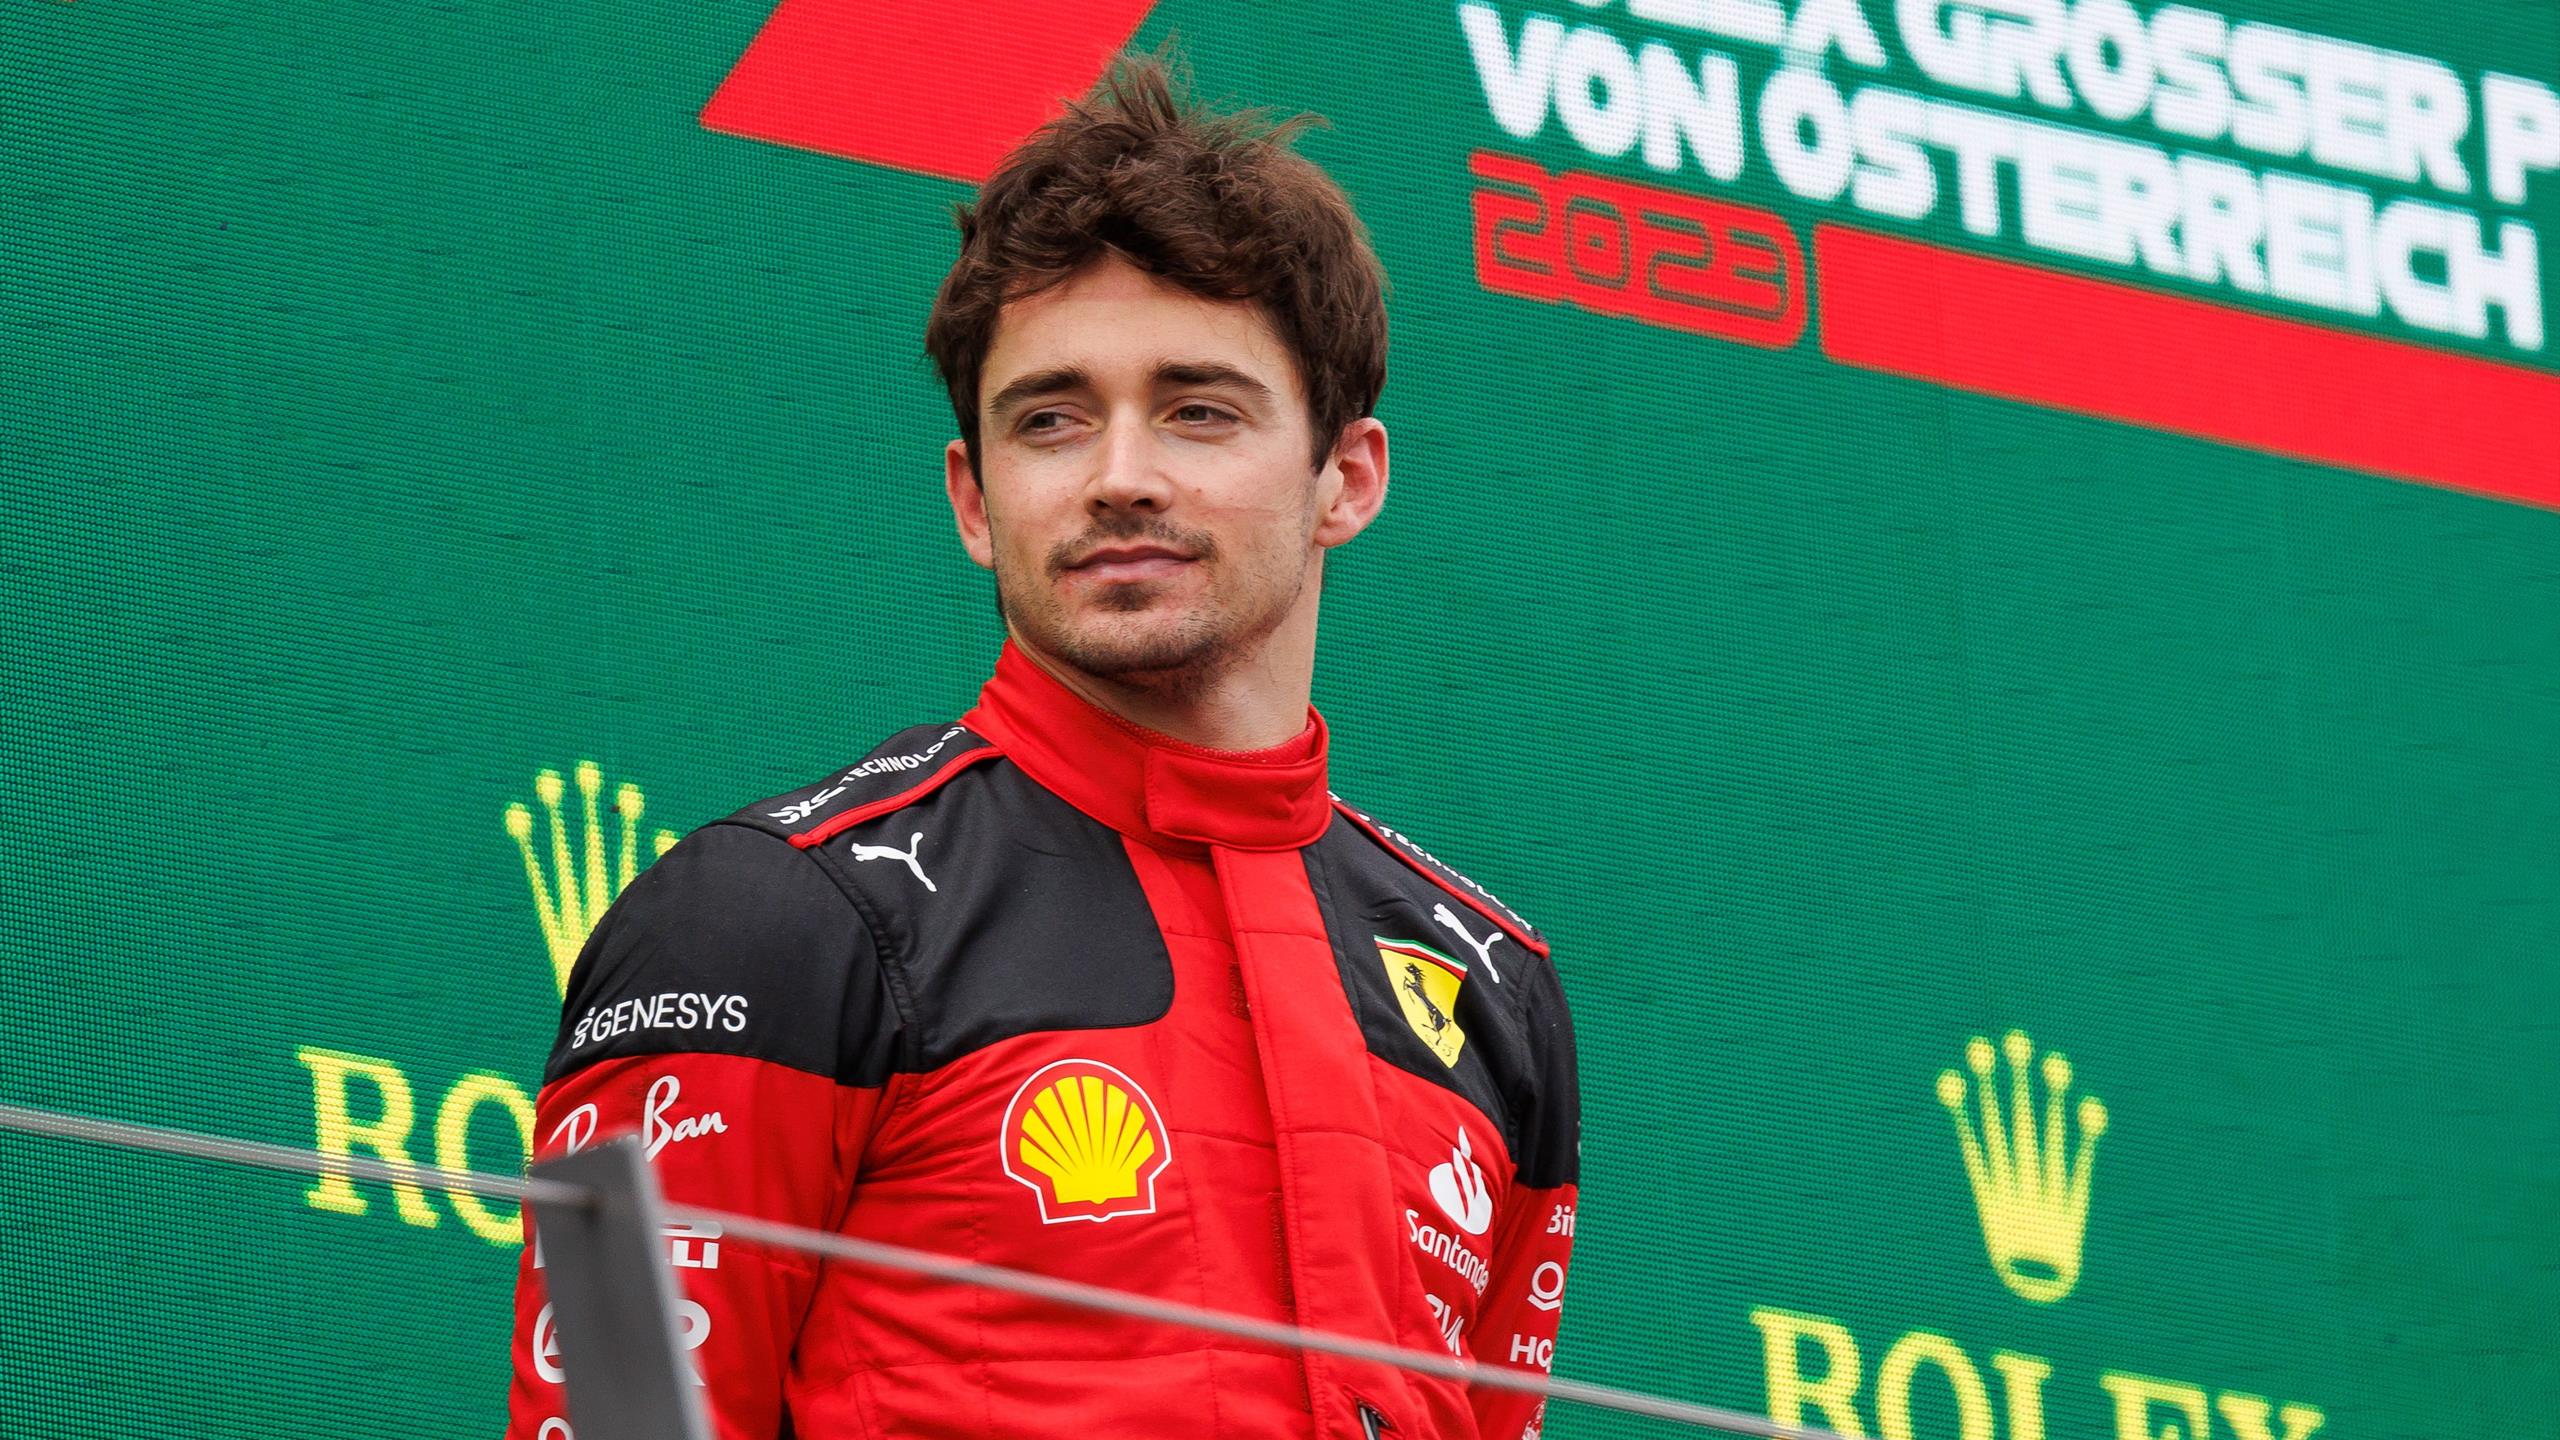 Leclerc: "SF-23 massimizzata". Sainz frustrato: "Meritavo il podio"